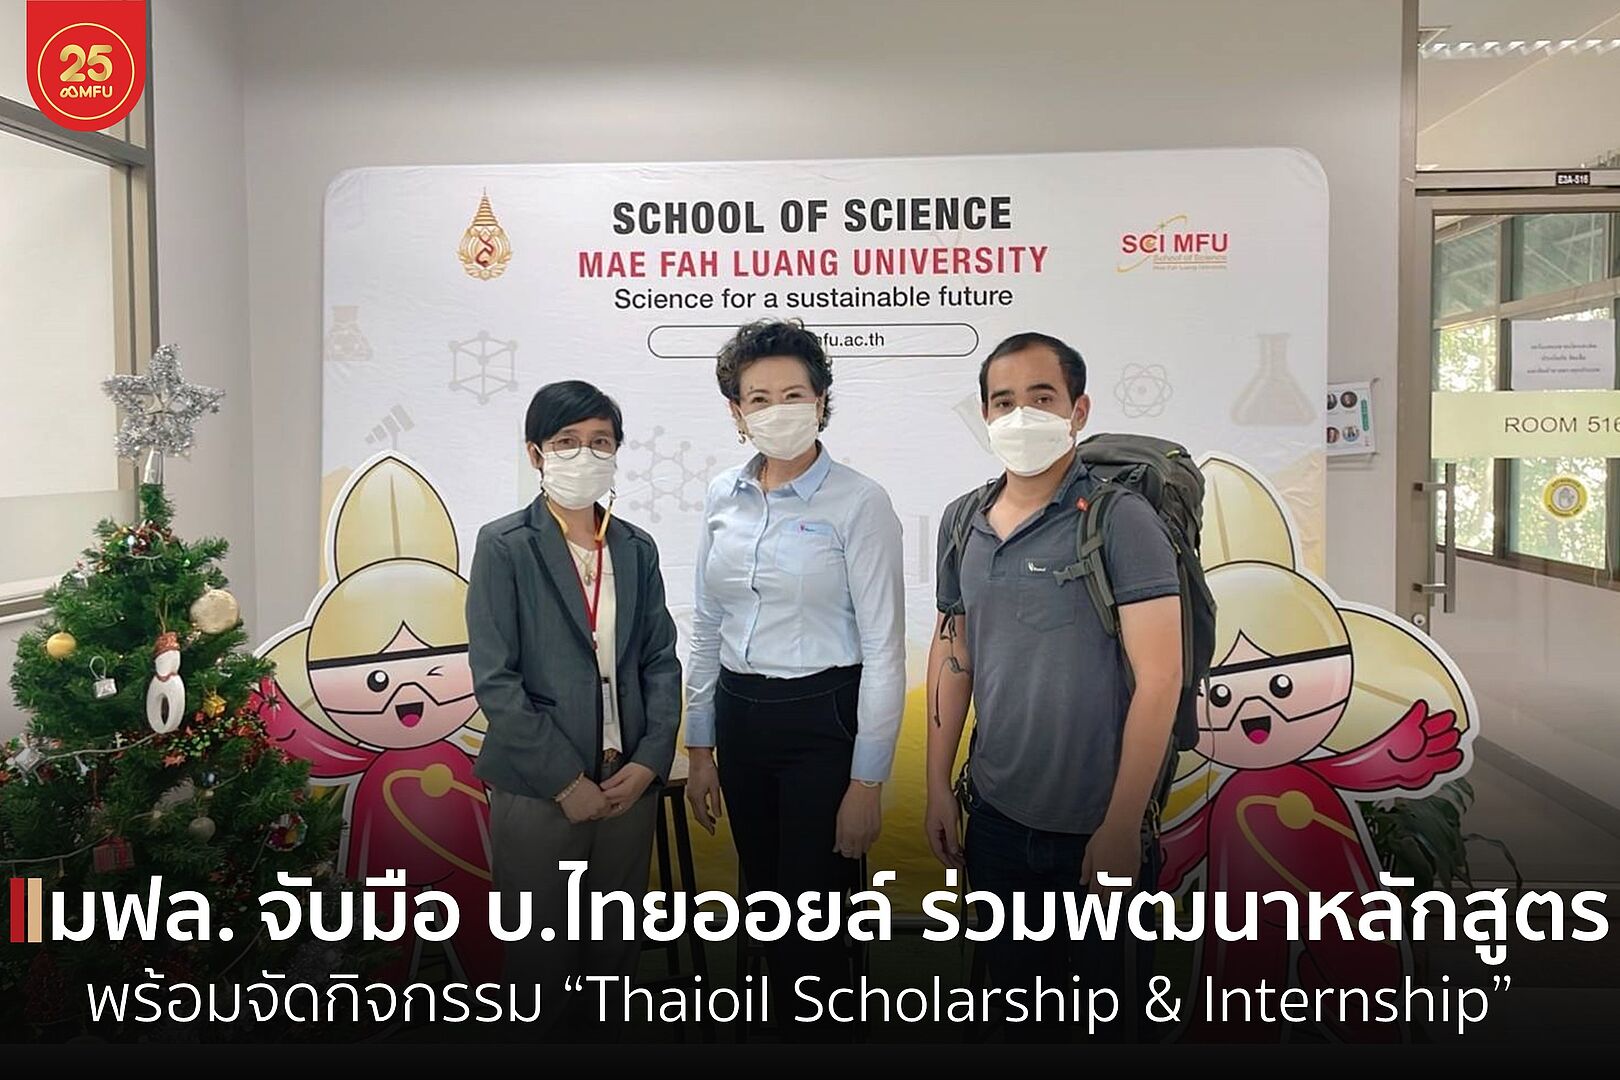 สาขาวิชาเคมีประยุกต์ จับมือ บ.ไทยออยล์ ร่วมพัฒนาหลักสูตรพร้อมจัดกิจกรรม “Thaioil Scholarship & Internship